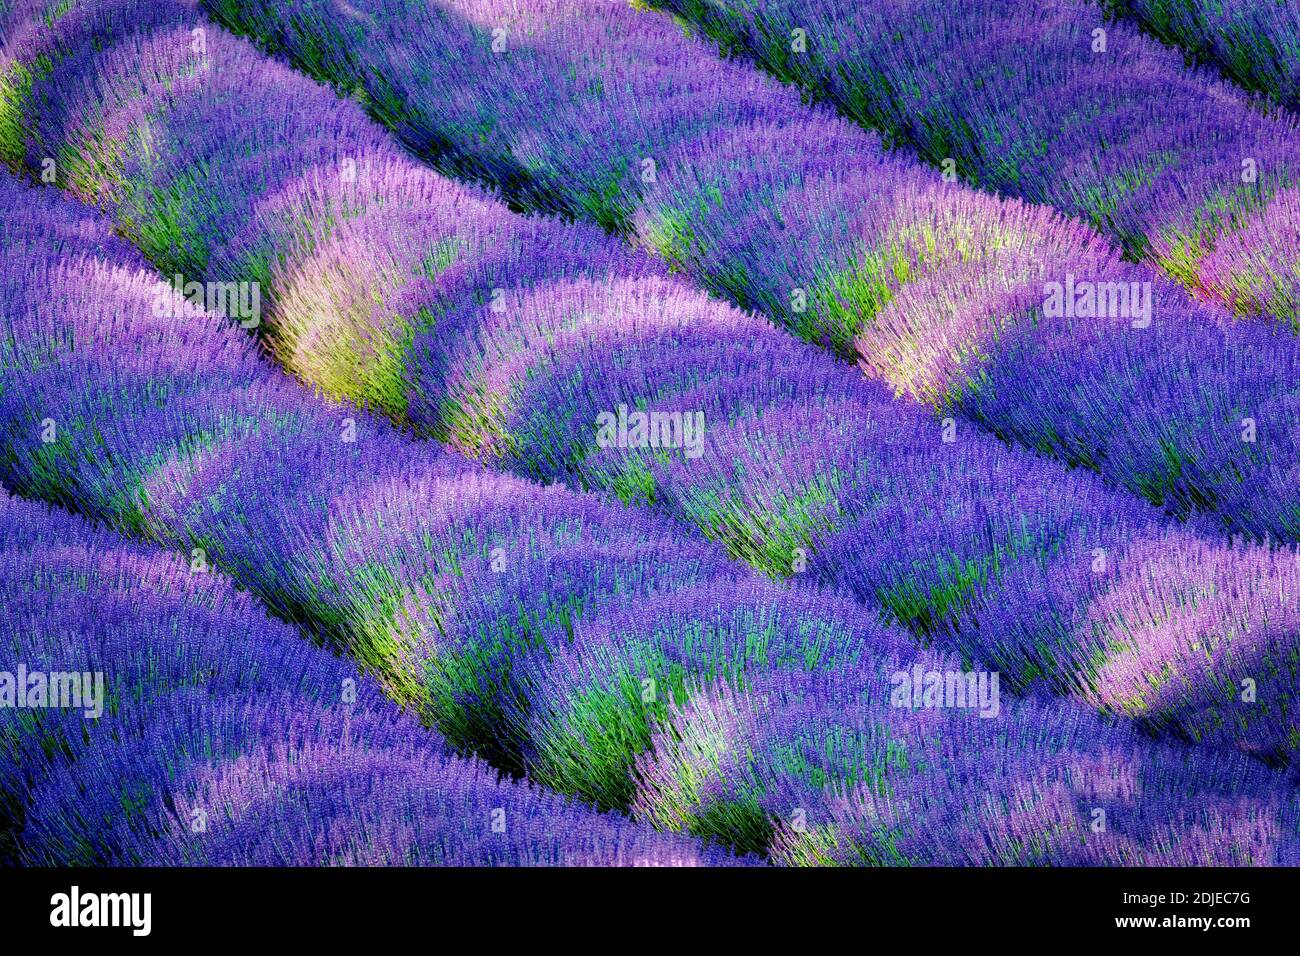 Rows of lavendar. Purple Haze Lavender Farm. Washington. Stock Photo